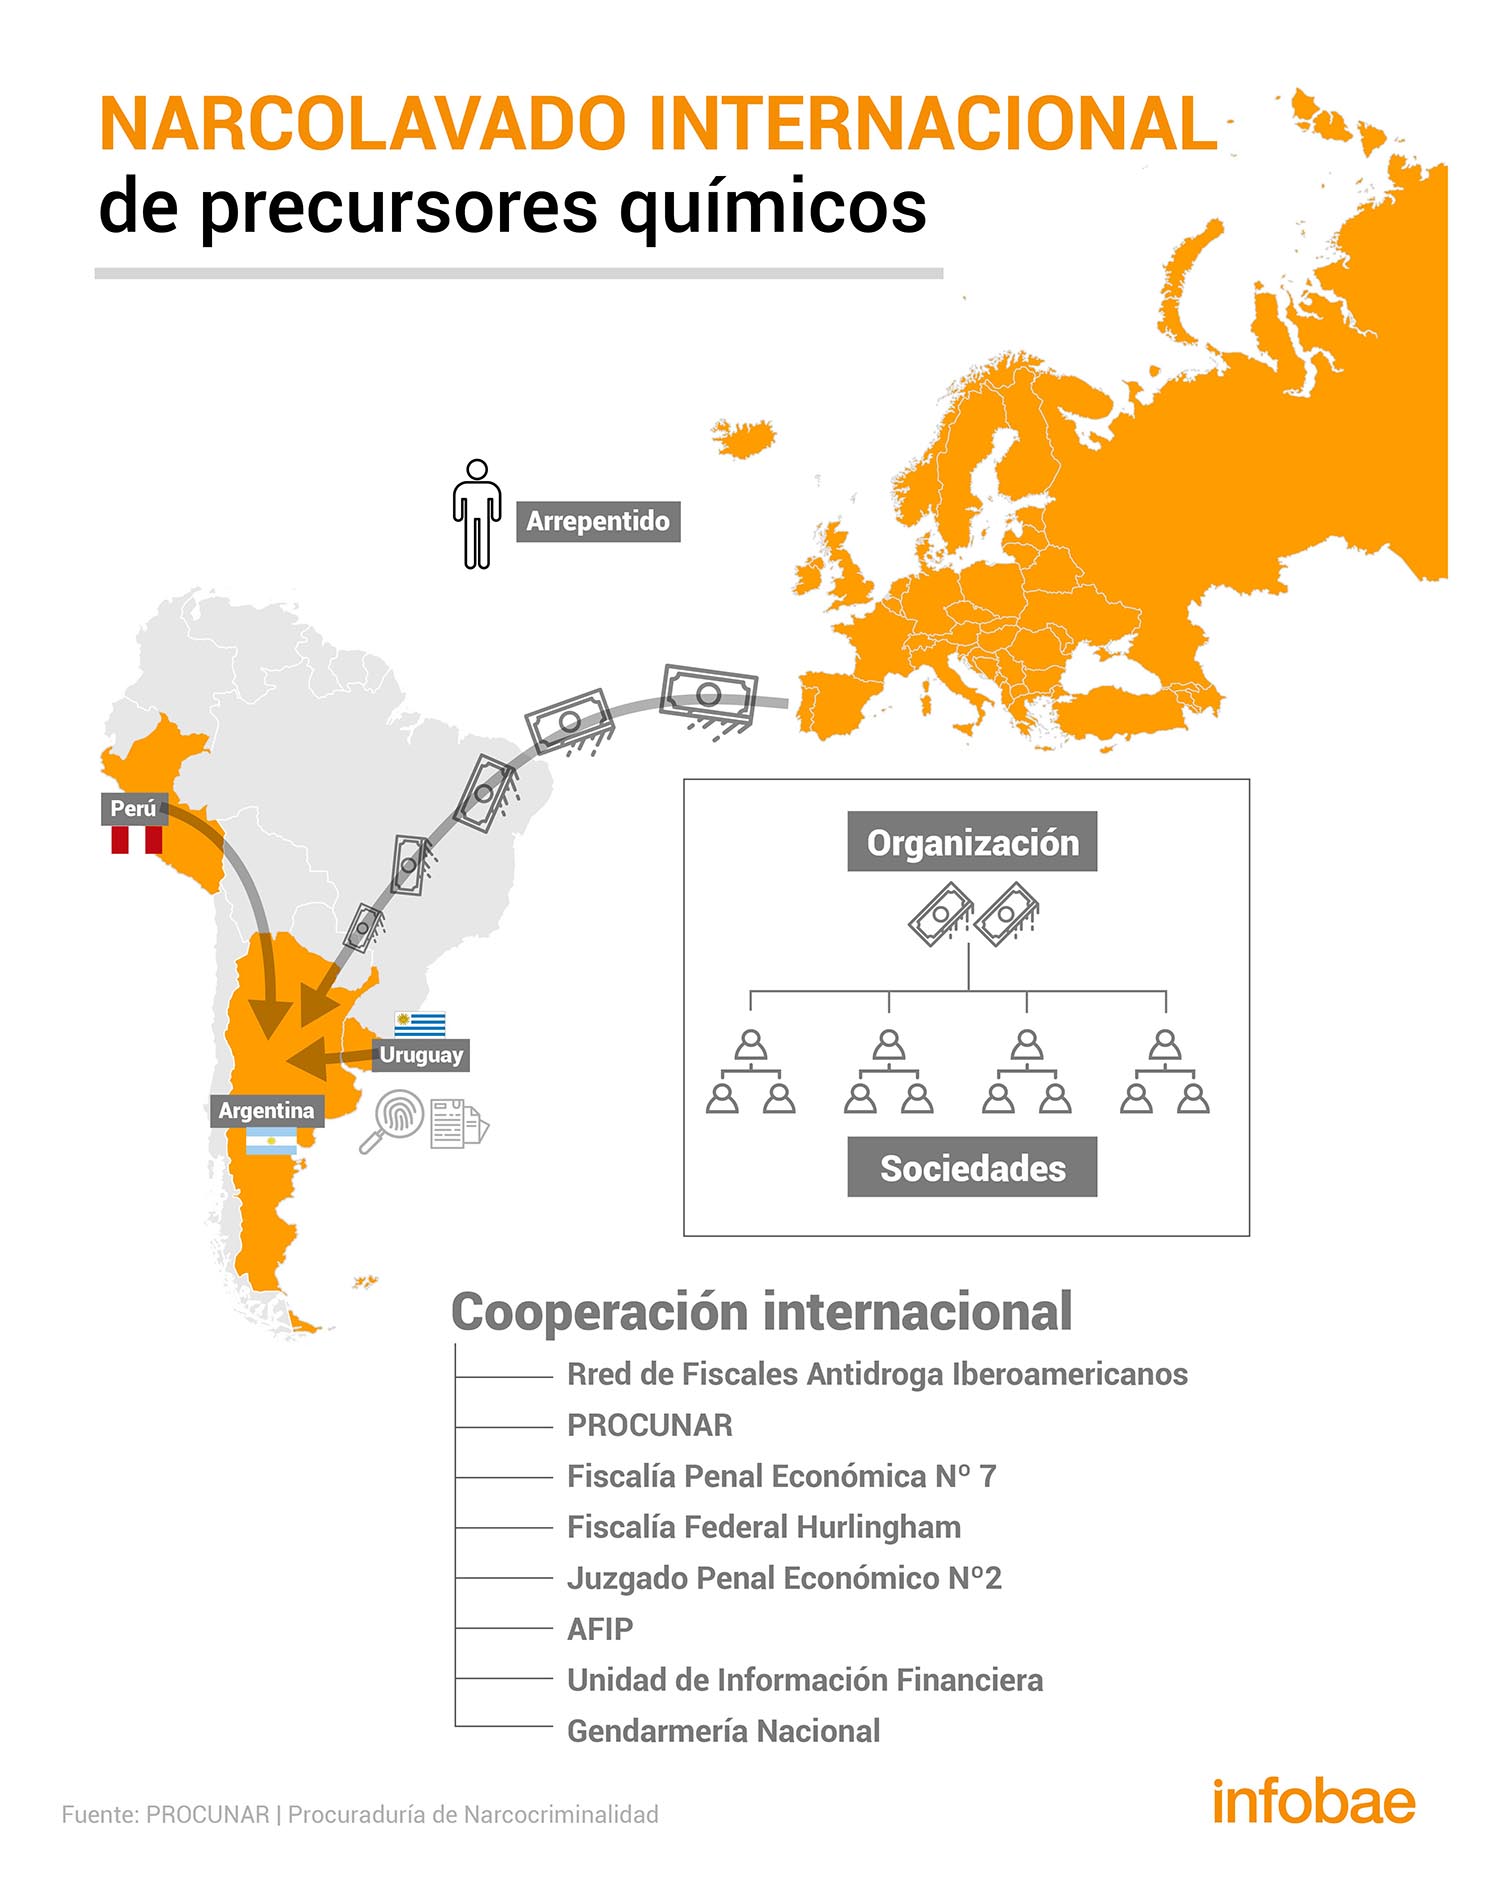 La ruta de la droga en la Argentina (Infografía: Marcelo Regalado)